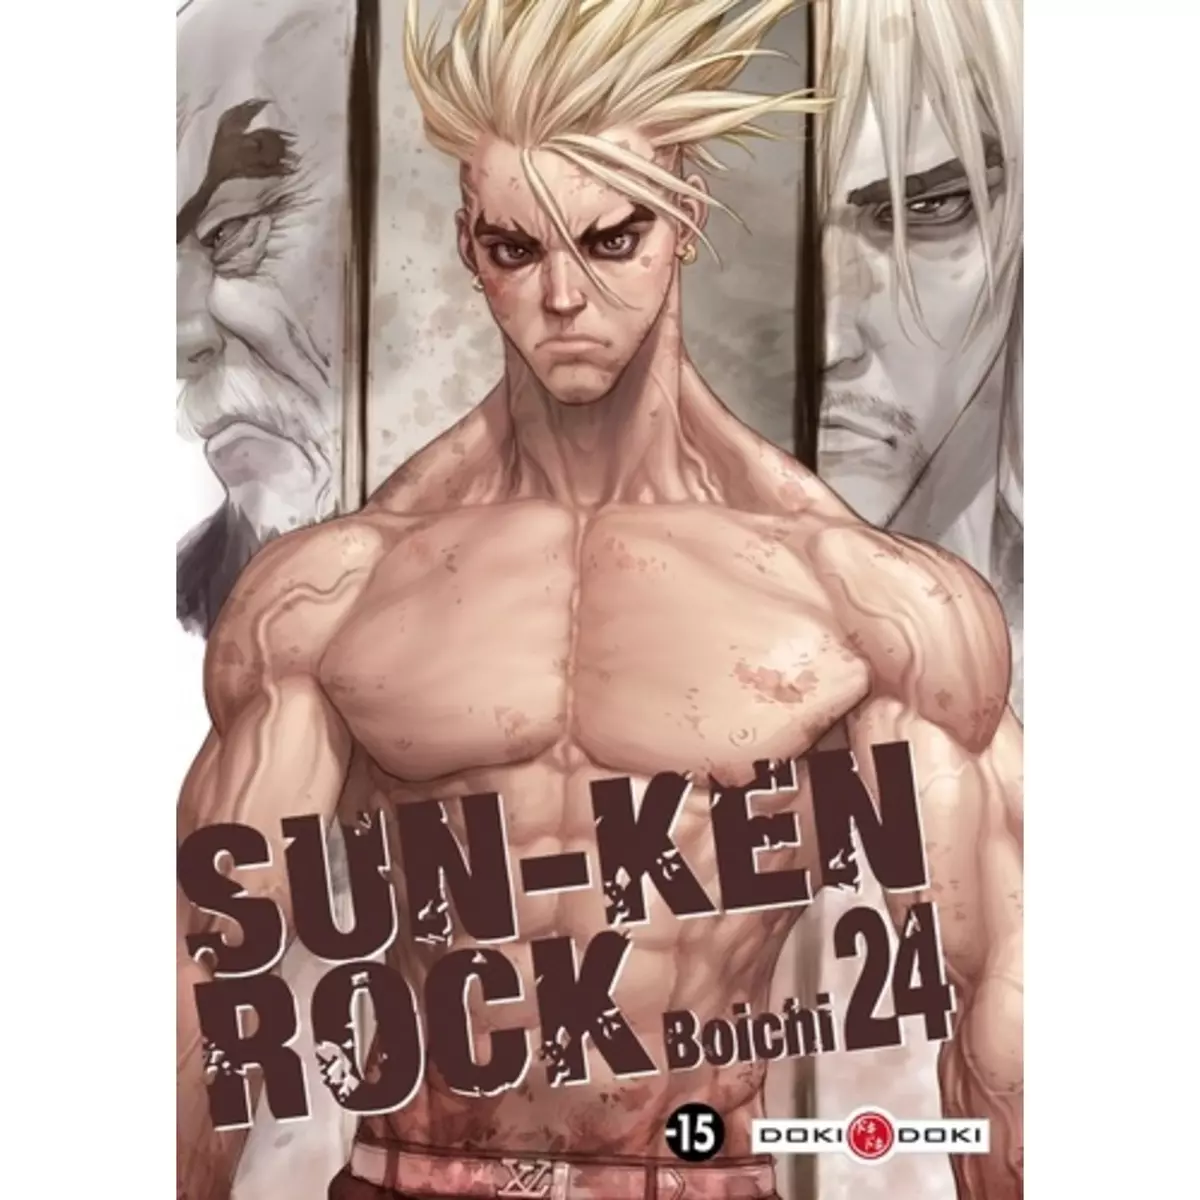  SUN-KEN ROCK TOME 24, Boichi